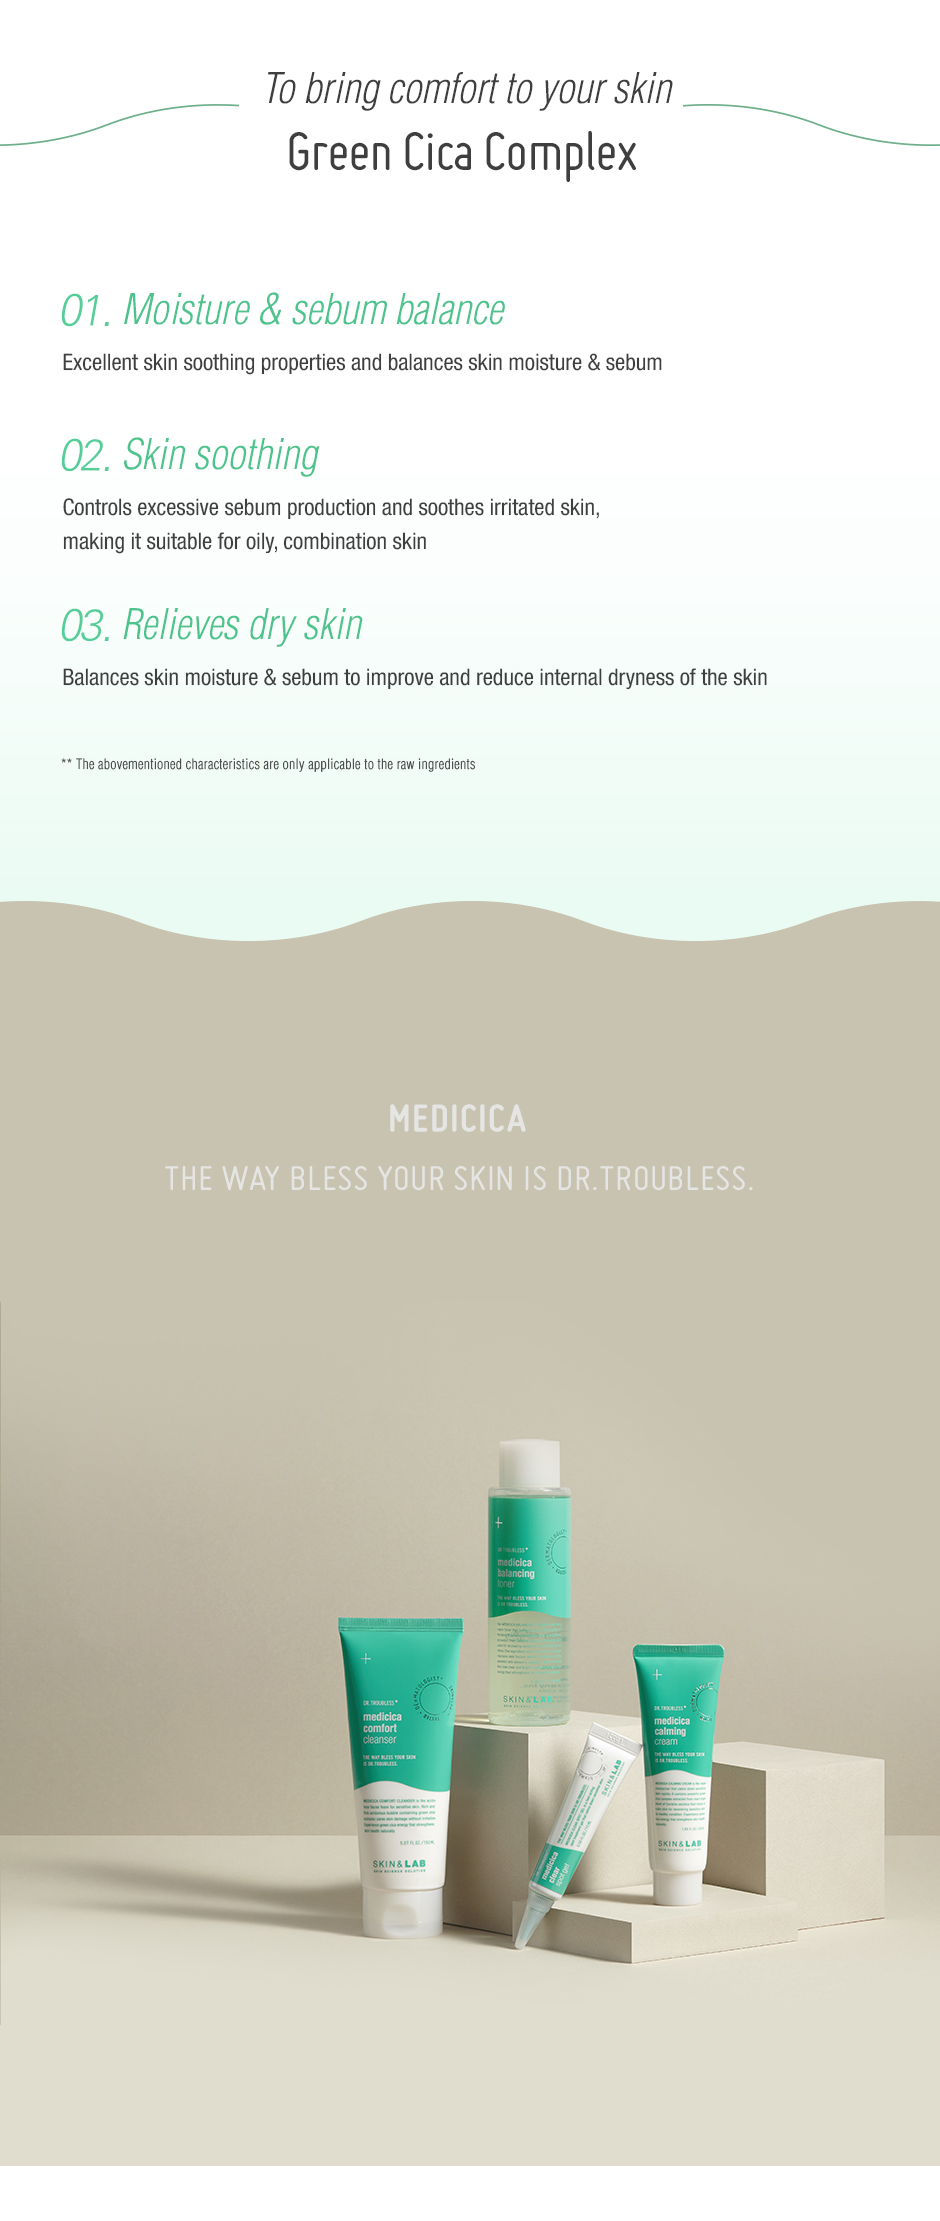 SKIN&LAB - Dr. Troubless Medicica Blancing Toner - 180ml (Centella özlü, cildi onarıcı ve güçlendirici tonik) Kore Kozmetik ve Cilt Bakım Ürünleri Türkiye K-Beauty  Skin&Lab Cilt Bakım Ürünleri Türkiye Satış